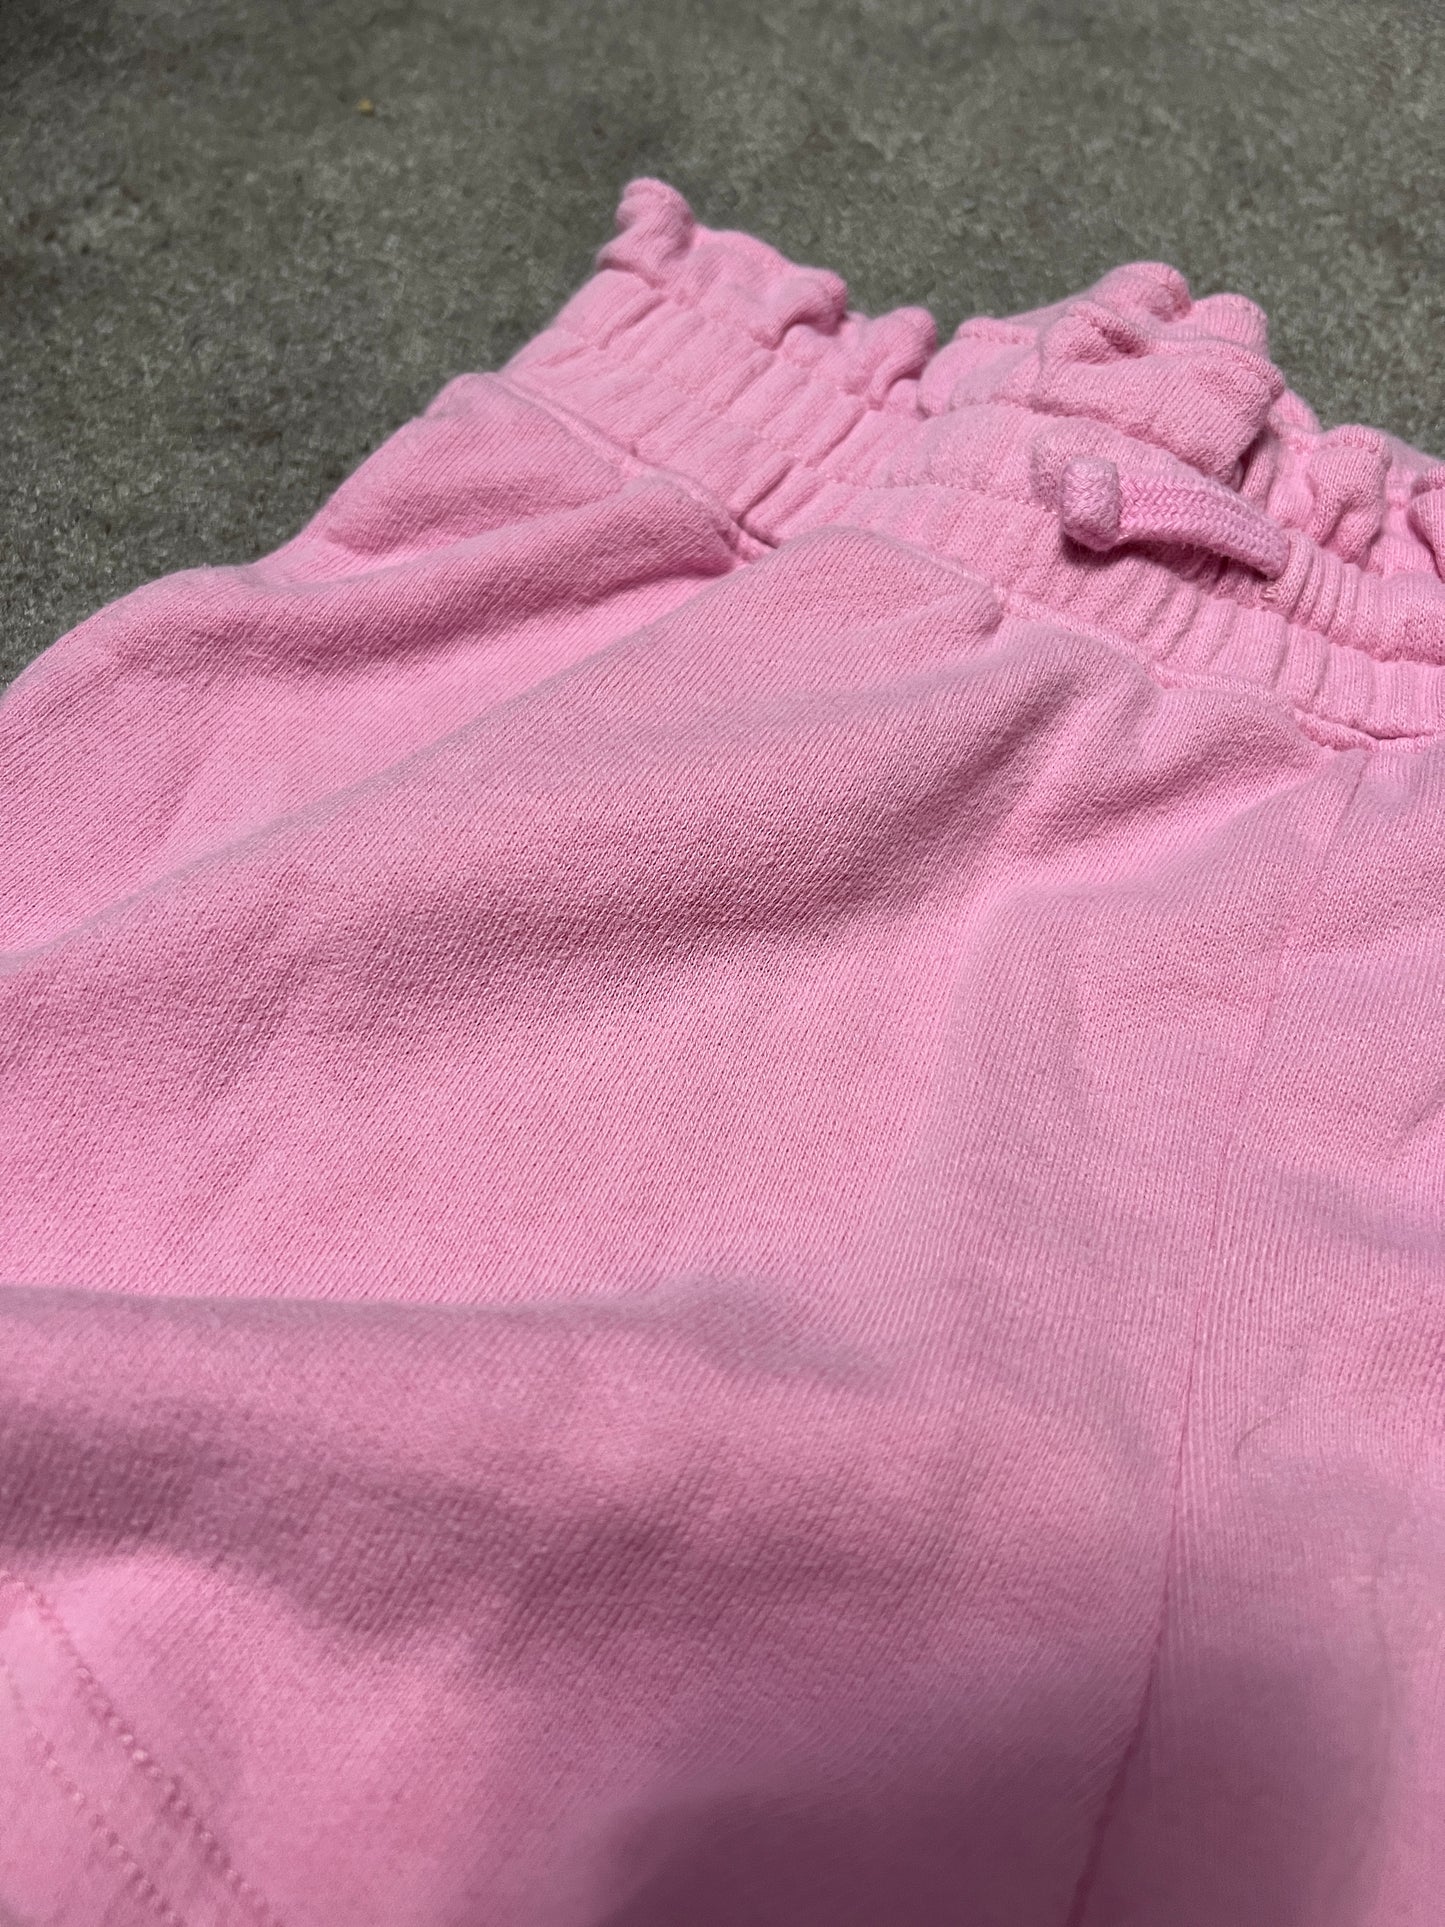 Abercrombie Kids 13/14 pink shorts- PPU 45044 (Liberty Twp)